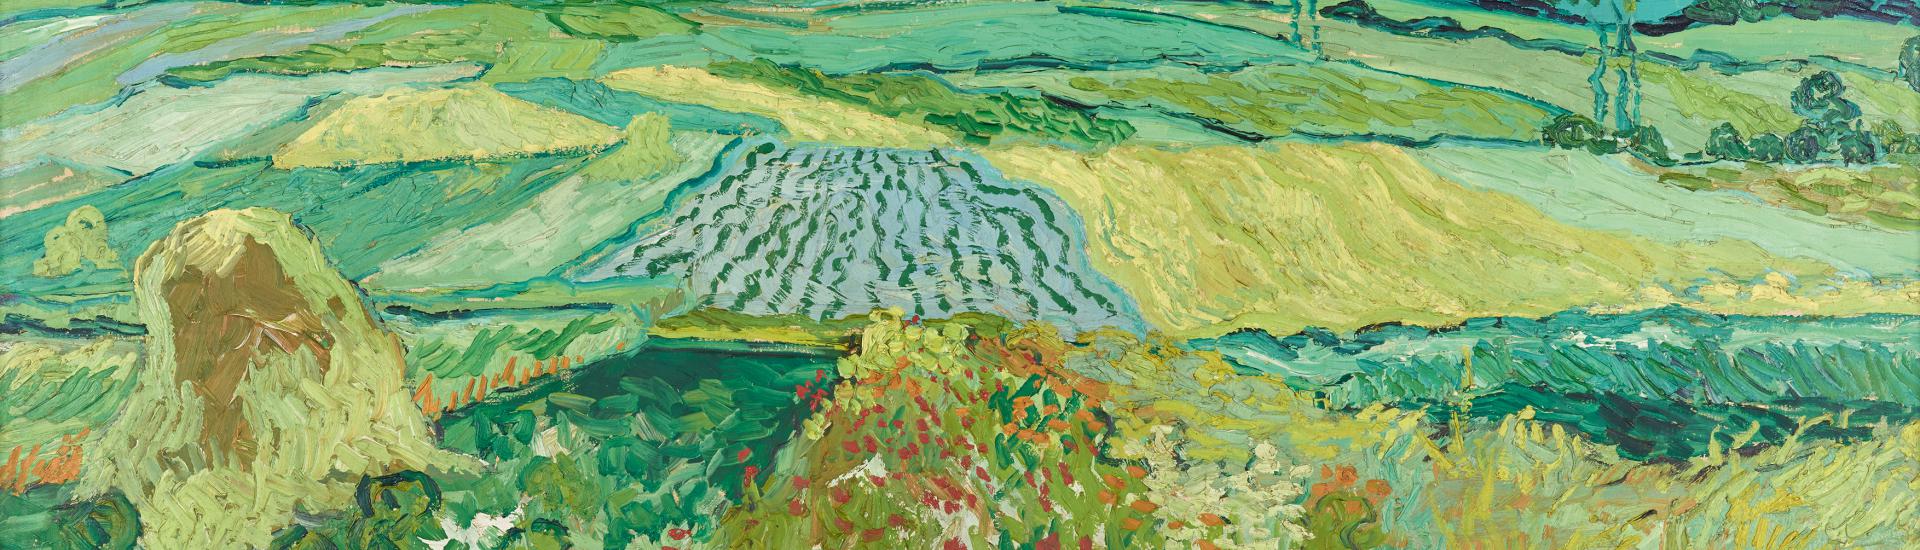 Vincent van Gogh, Die Ebene von Auvers, 1890, Öl auf Leinwand, 50 x 101 cm, Belvedere, Wien, Inv.-Nr. 1007 © Belvedere, Wien, Foto: Johannes Stoll